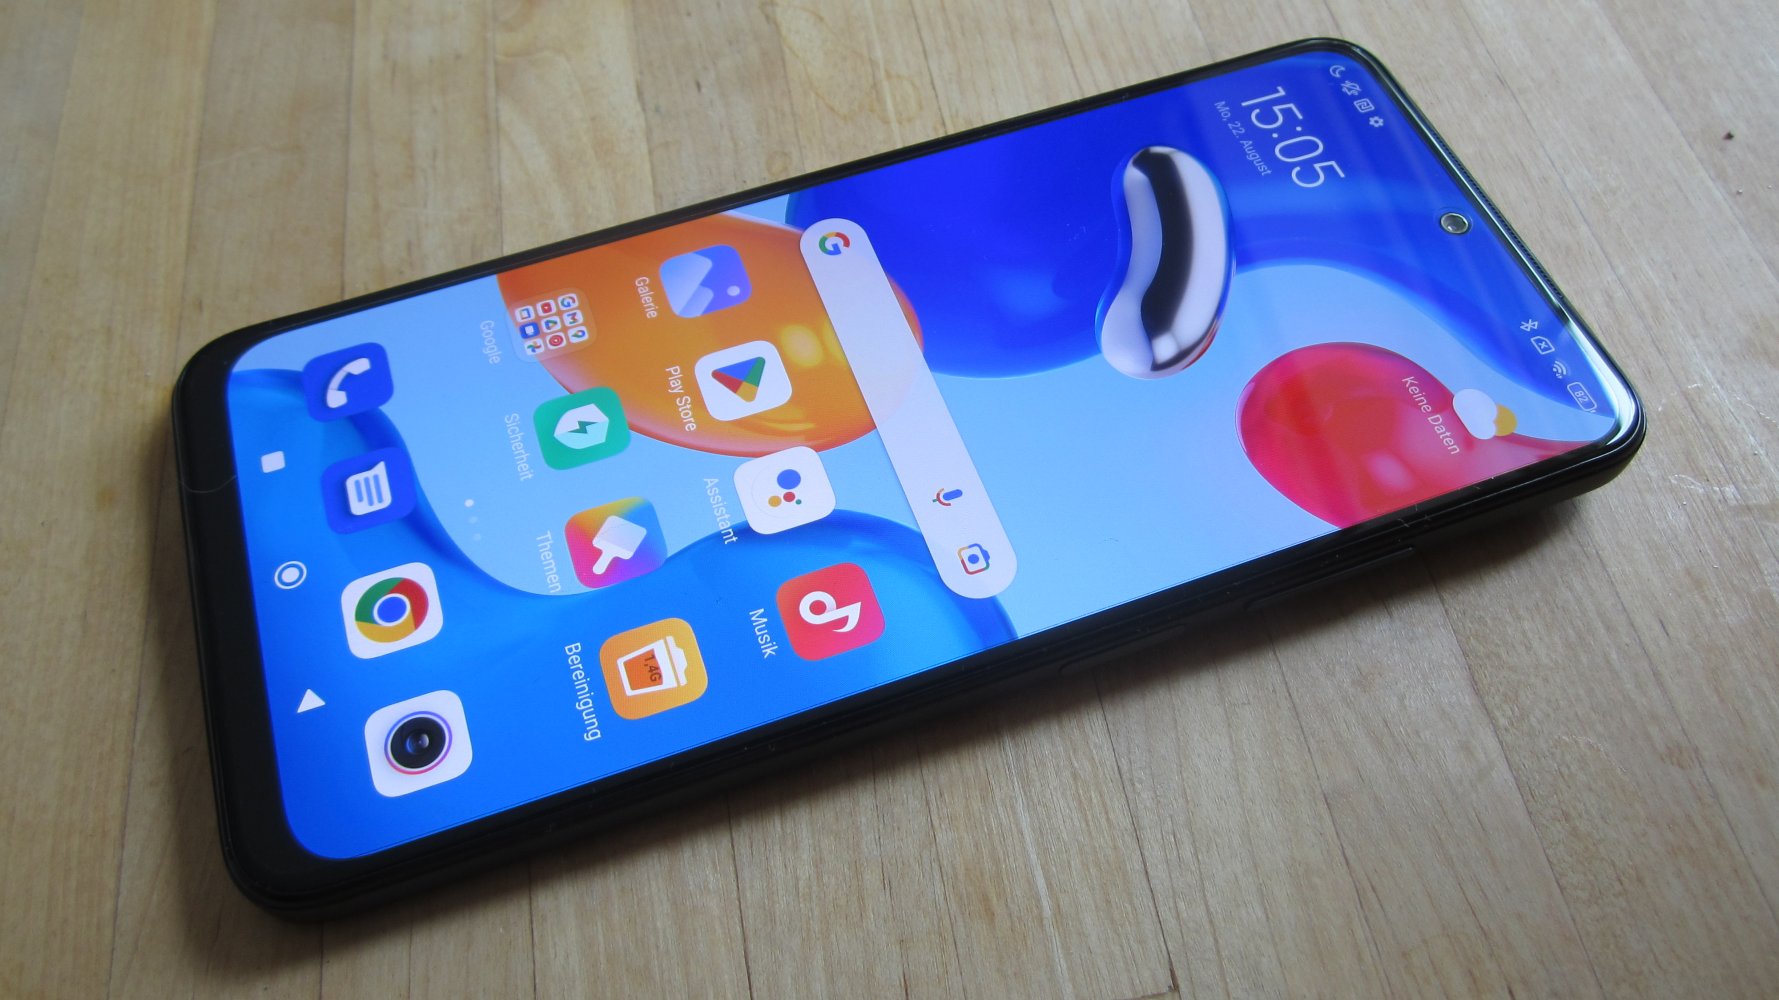 Análisis del smartphone Xiaomi Redmi Note 11S: AMOLED de 90 Hz y cámara de  108 MP por 200 euros (~199 dólares) -  Analisis